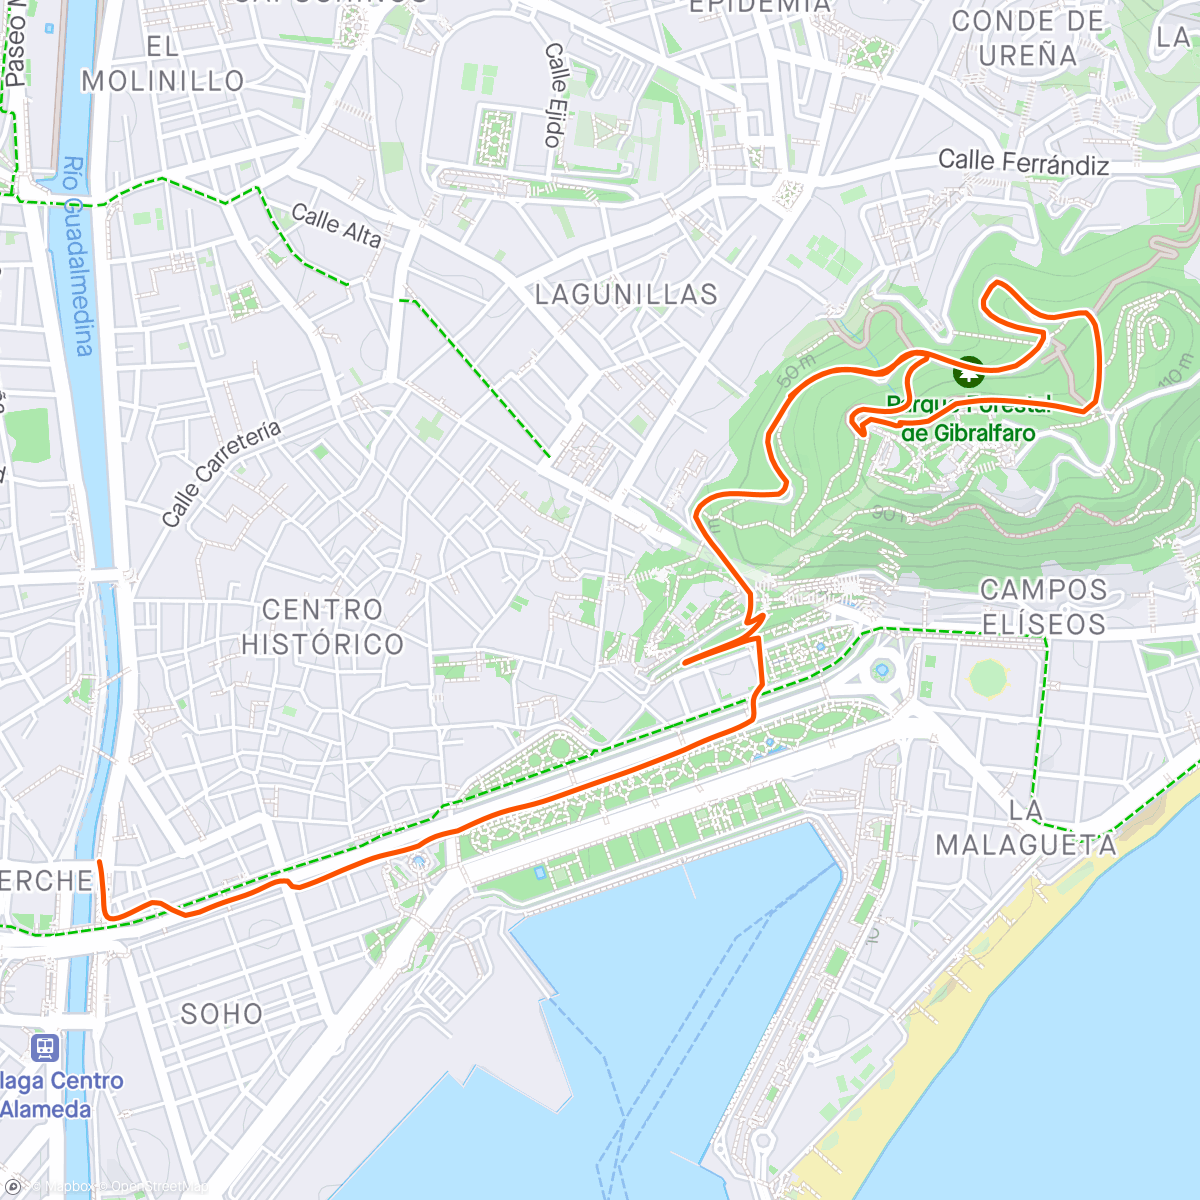 Mapa da atividade, První pokus o castillo de gibralfao